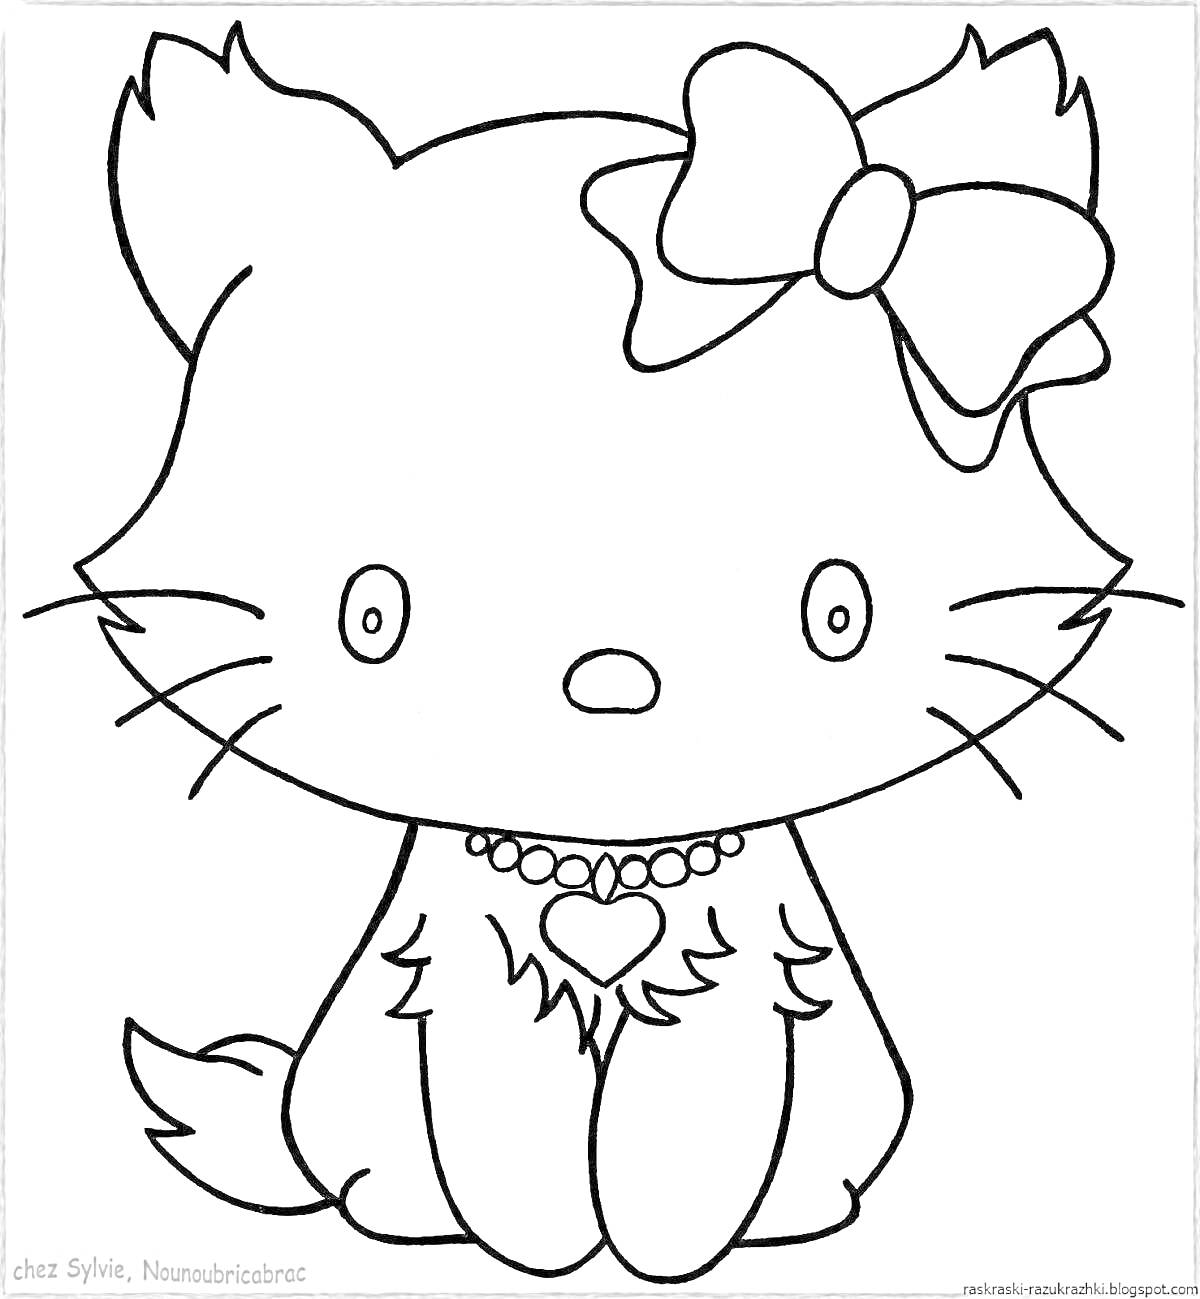 Раскраска Кошка с бантиком и ожерельем-сердечком